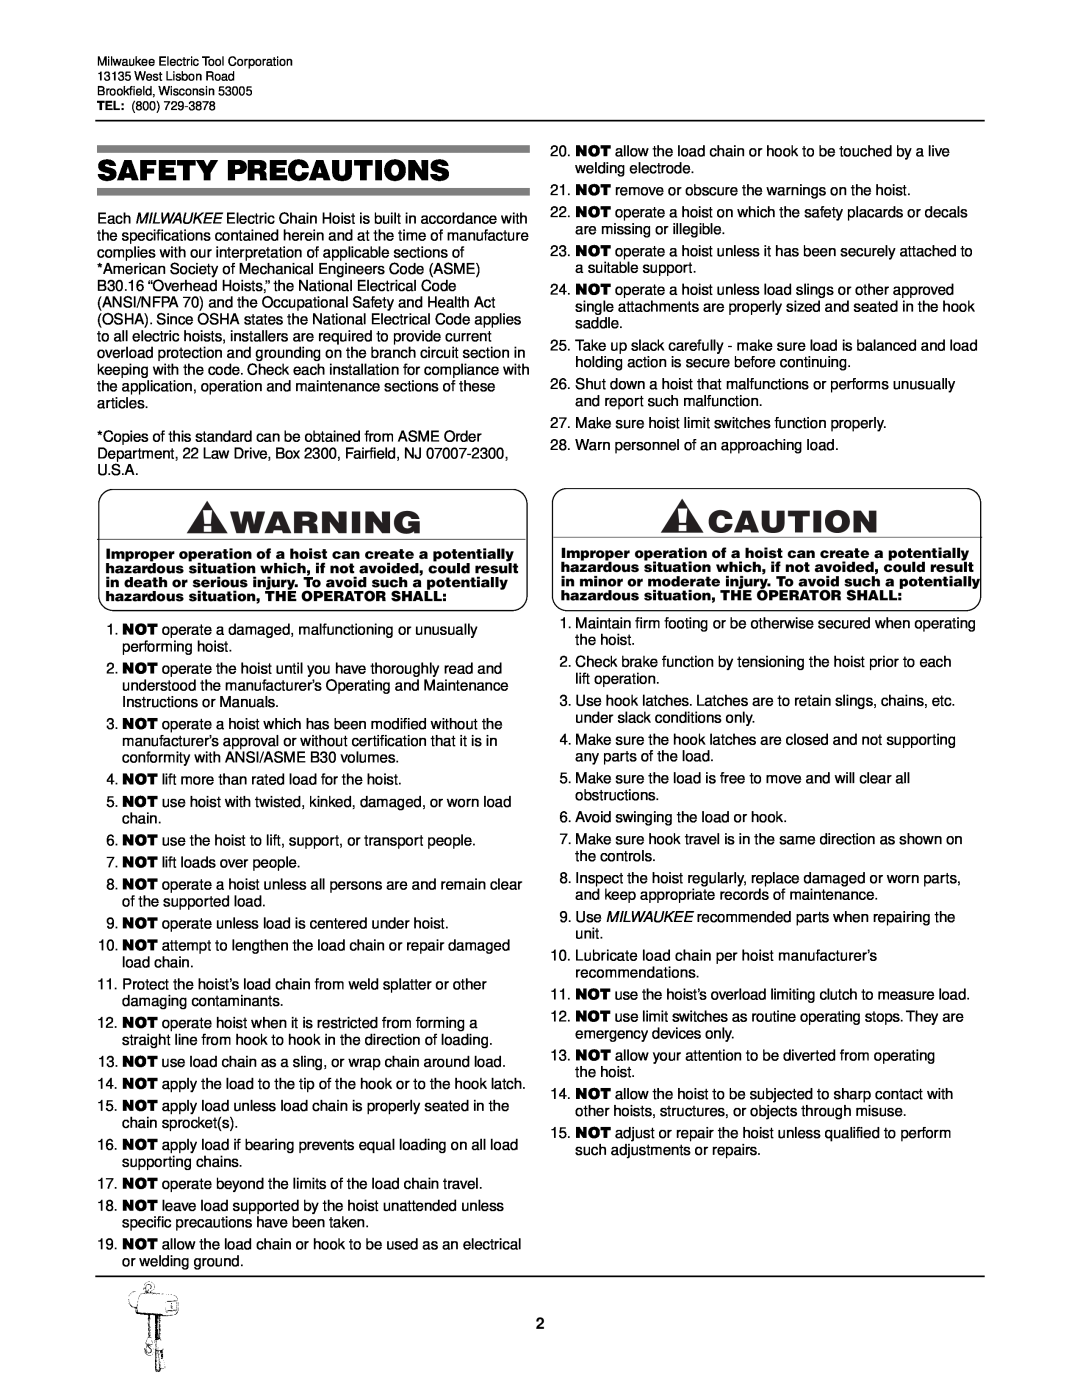 Milwaukee 9568, 9572, 9573, 9571, 9570, 9565, 9560, 9561, 9567, 9566, 9562 manual Safety Precautions 